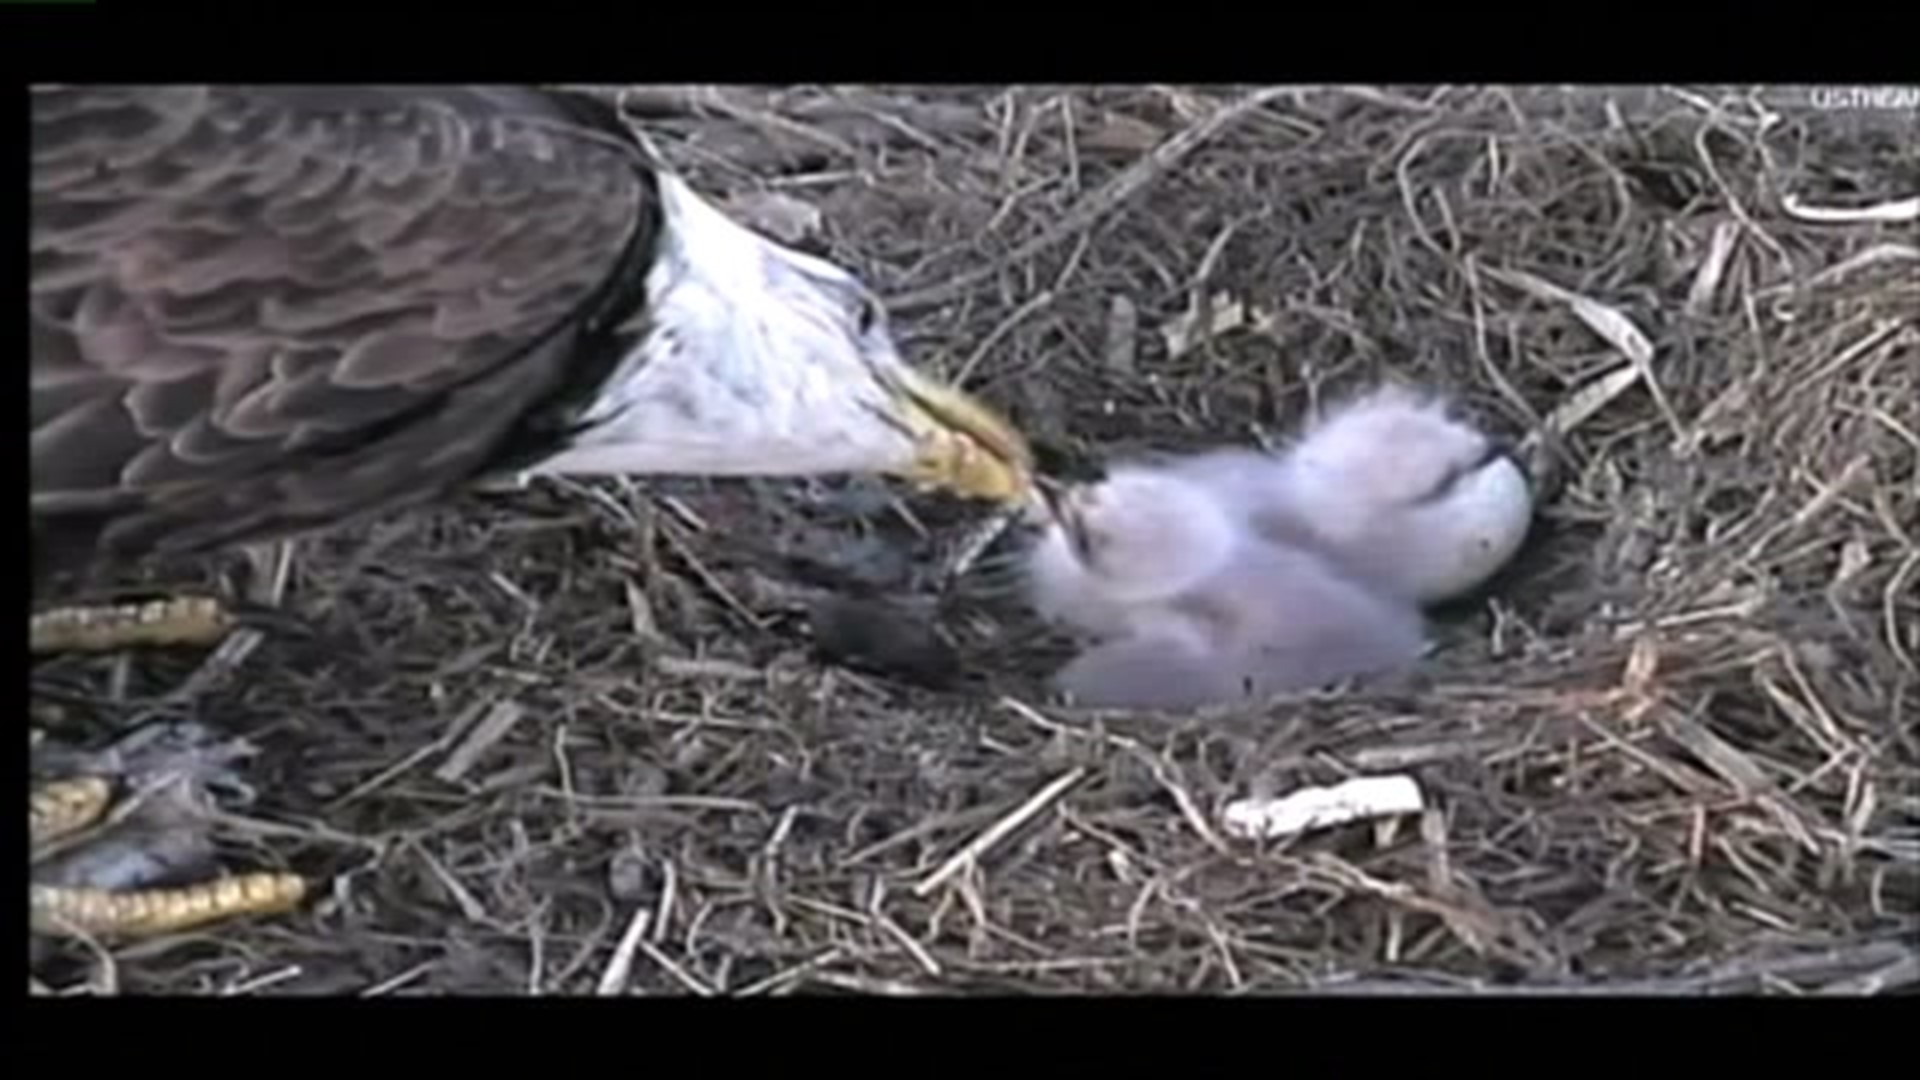 Decorah eagles` nest rebuilt